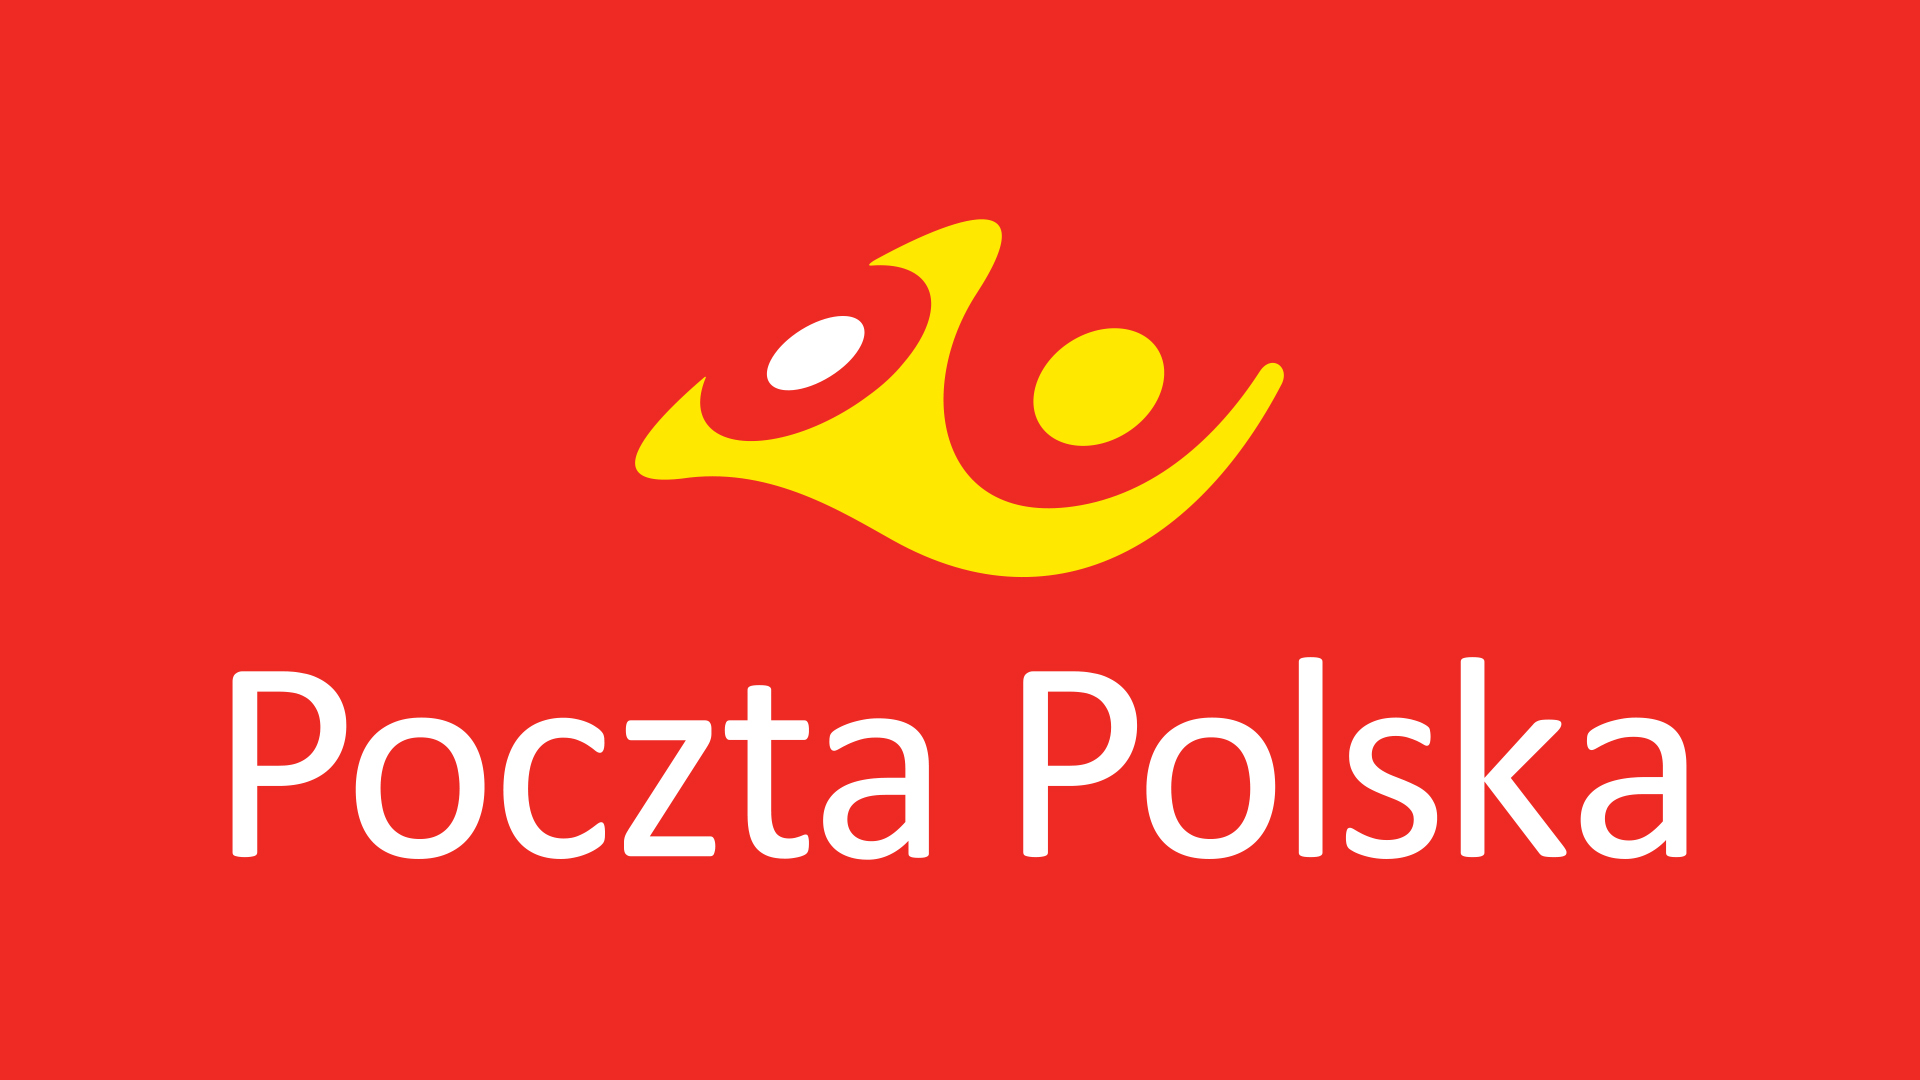 Poczta Polska rusza z automatami paczkowymi – awizo zamiast paczek i odpowiedź operatora